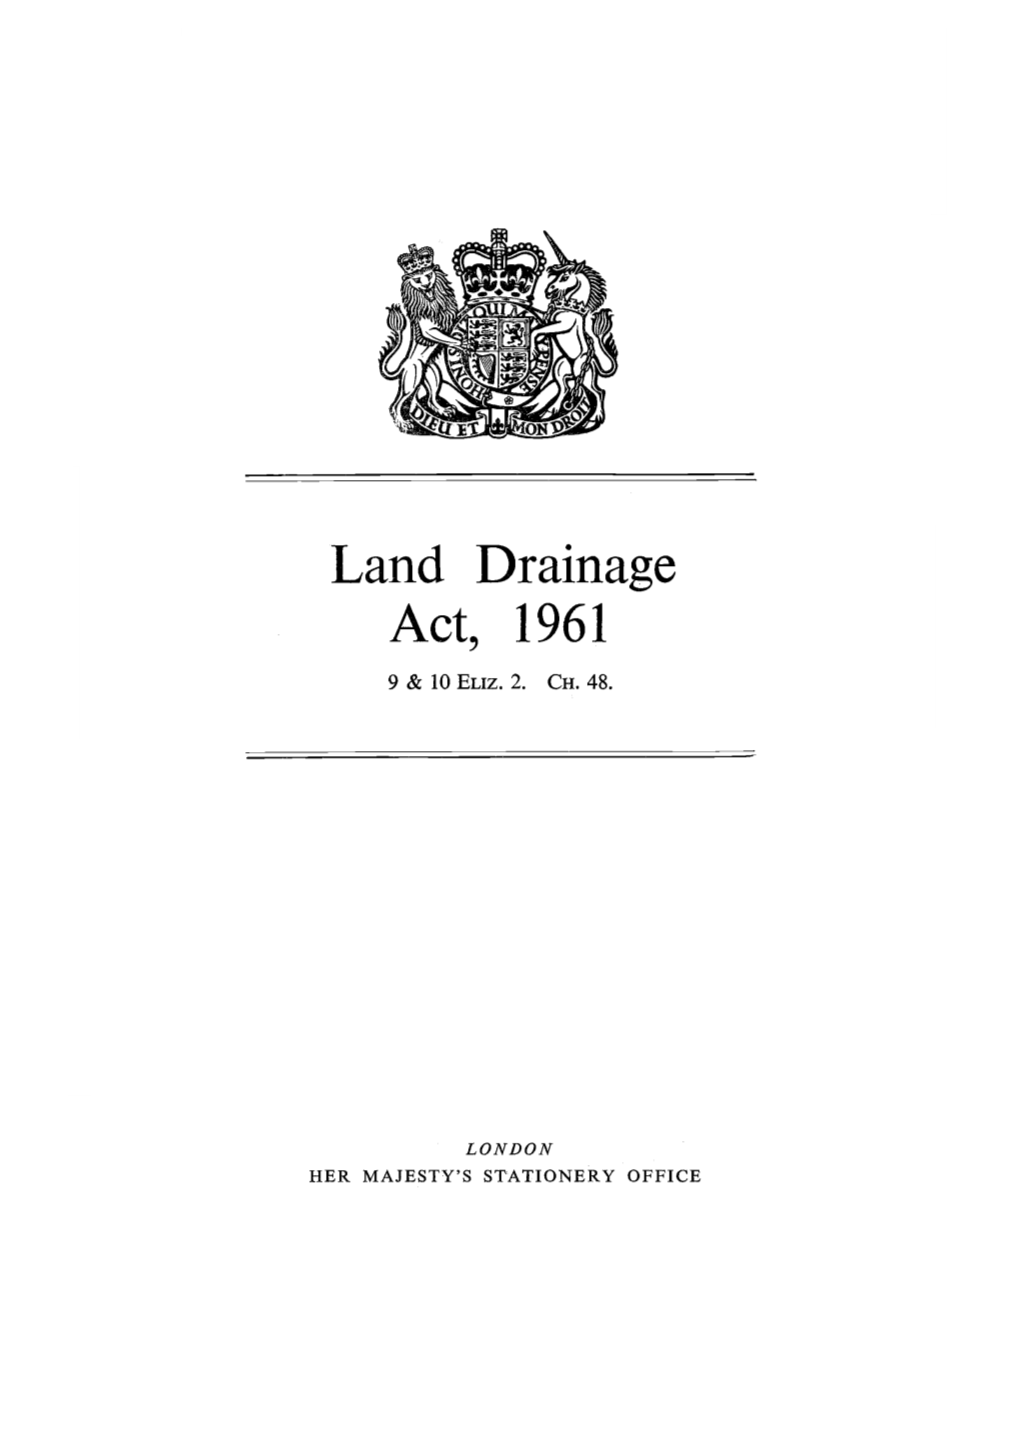 Land Drainage Act, 1961